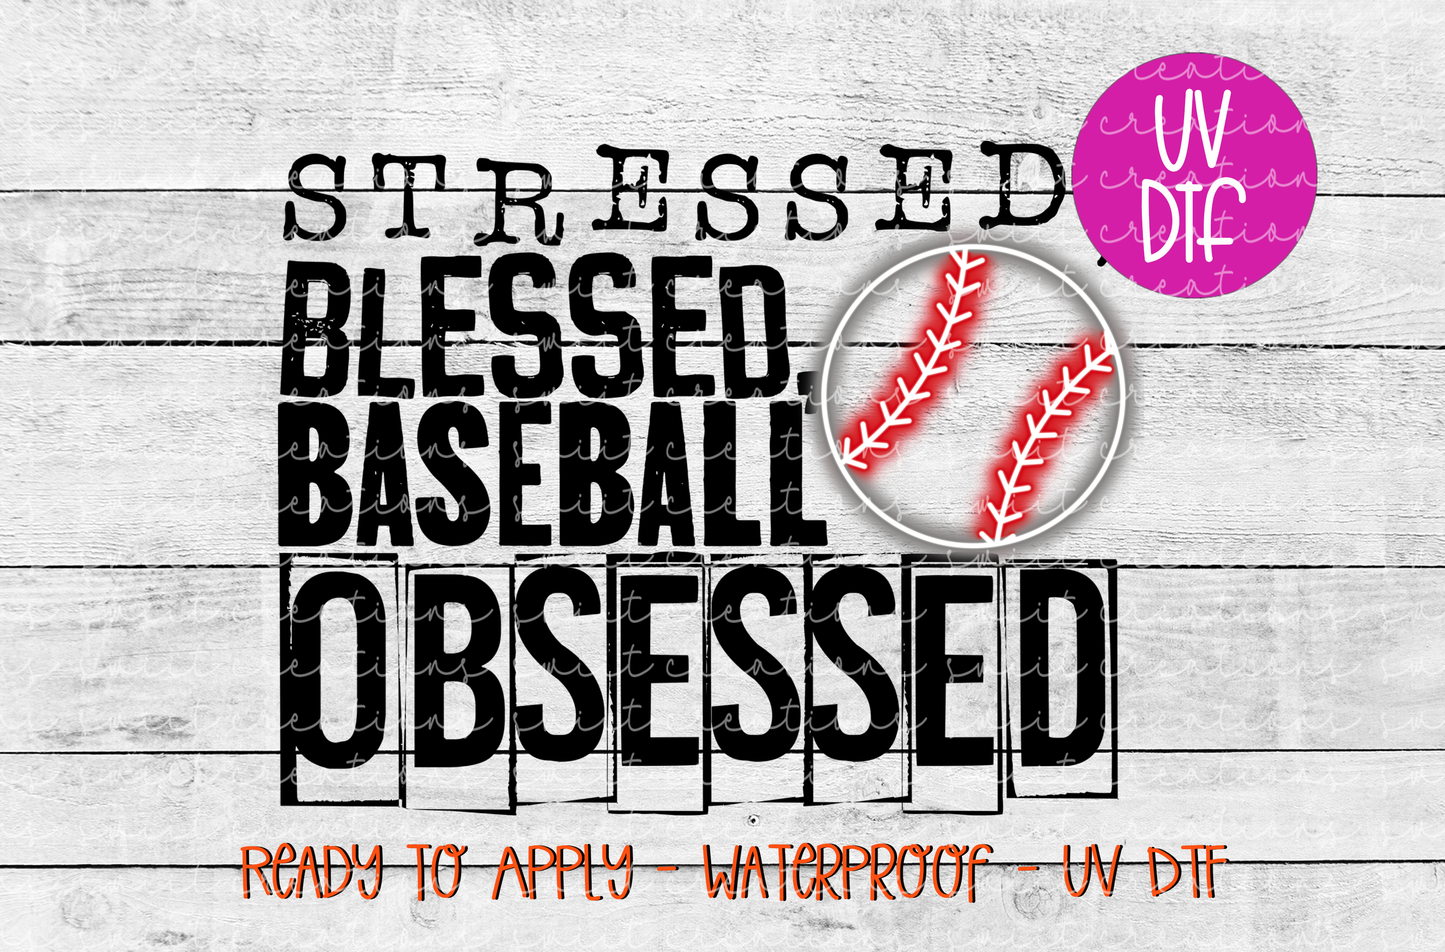 Stessed Blessed Baseball Obssessed UV DTF - UV376 (4x3)